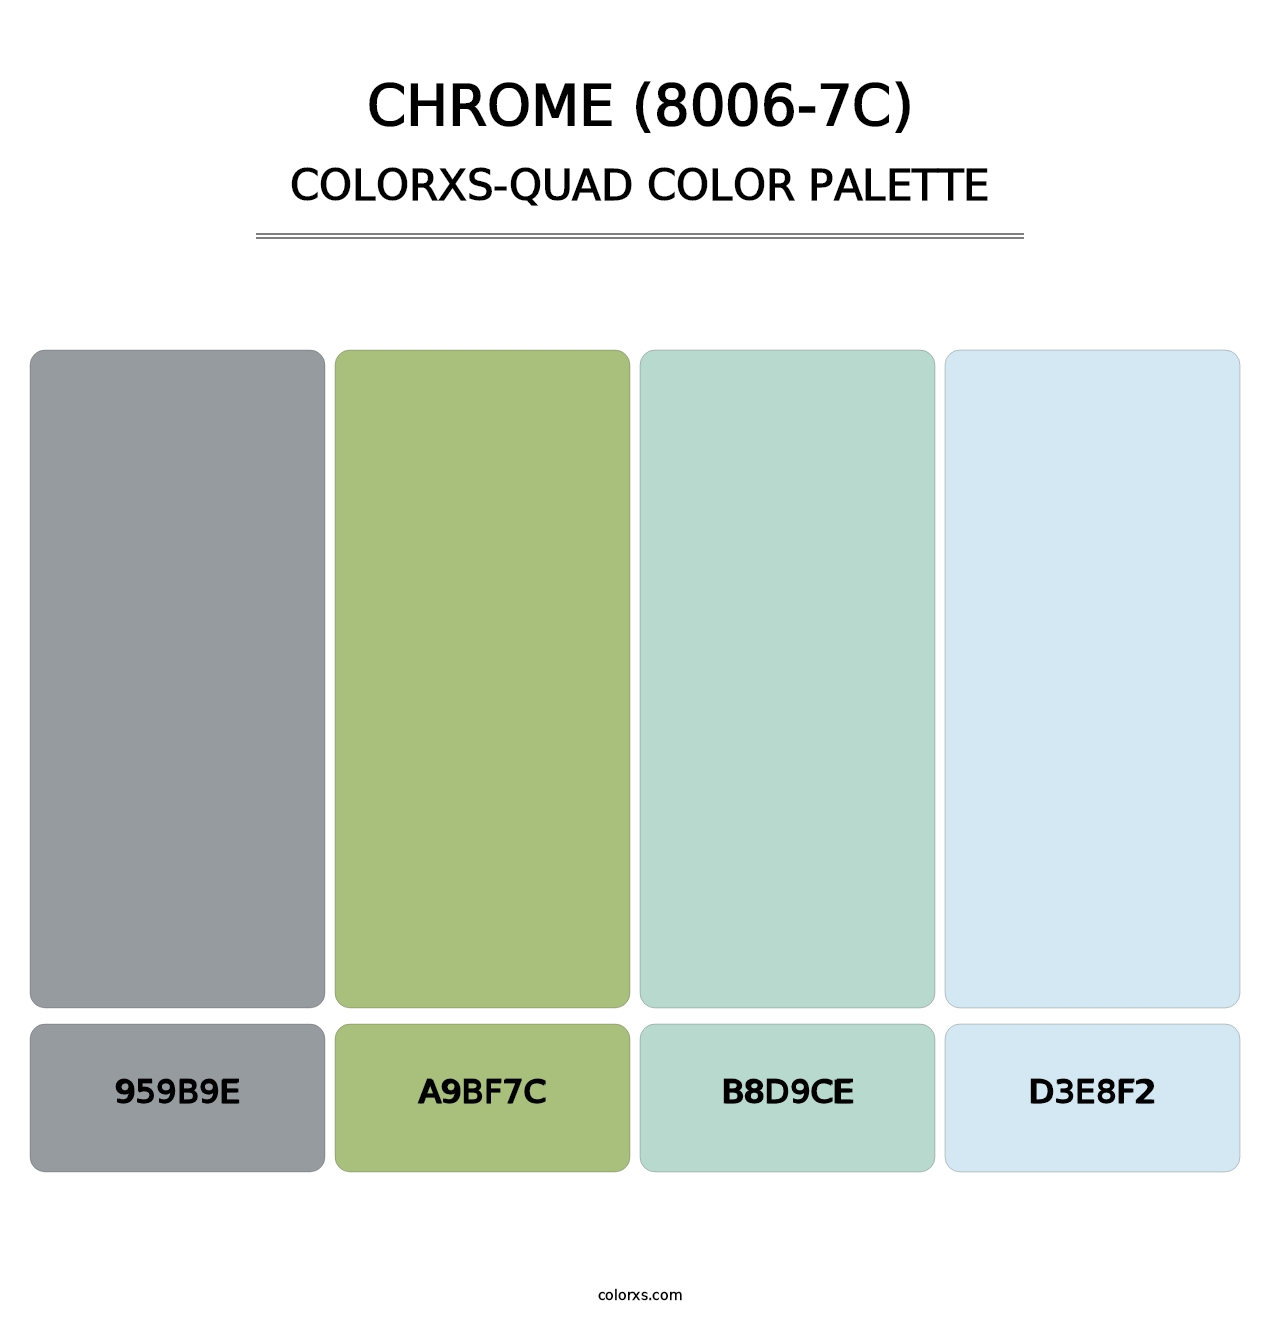 Chrome (8006-7C) - Colorxs Quad Palette